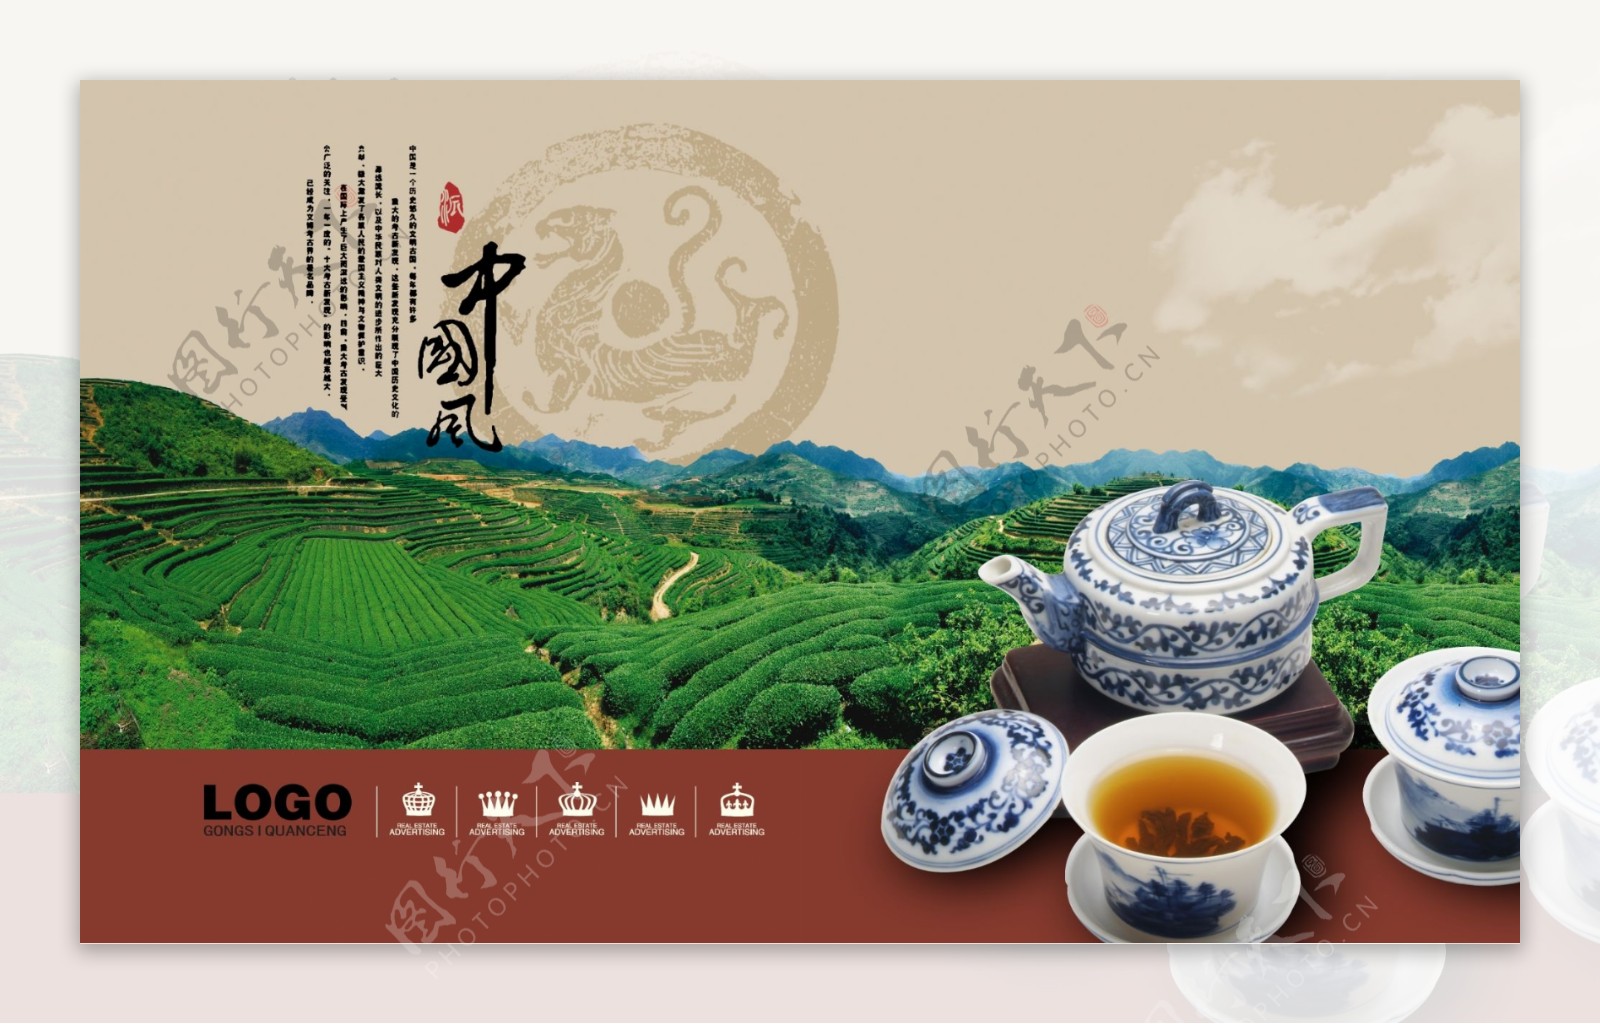 中国风茶叶广告PSD模板